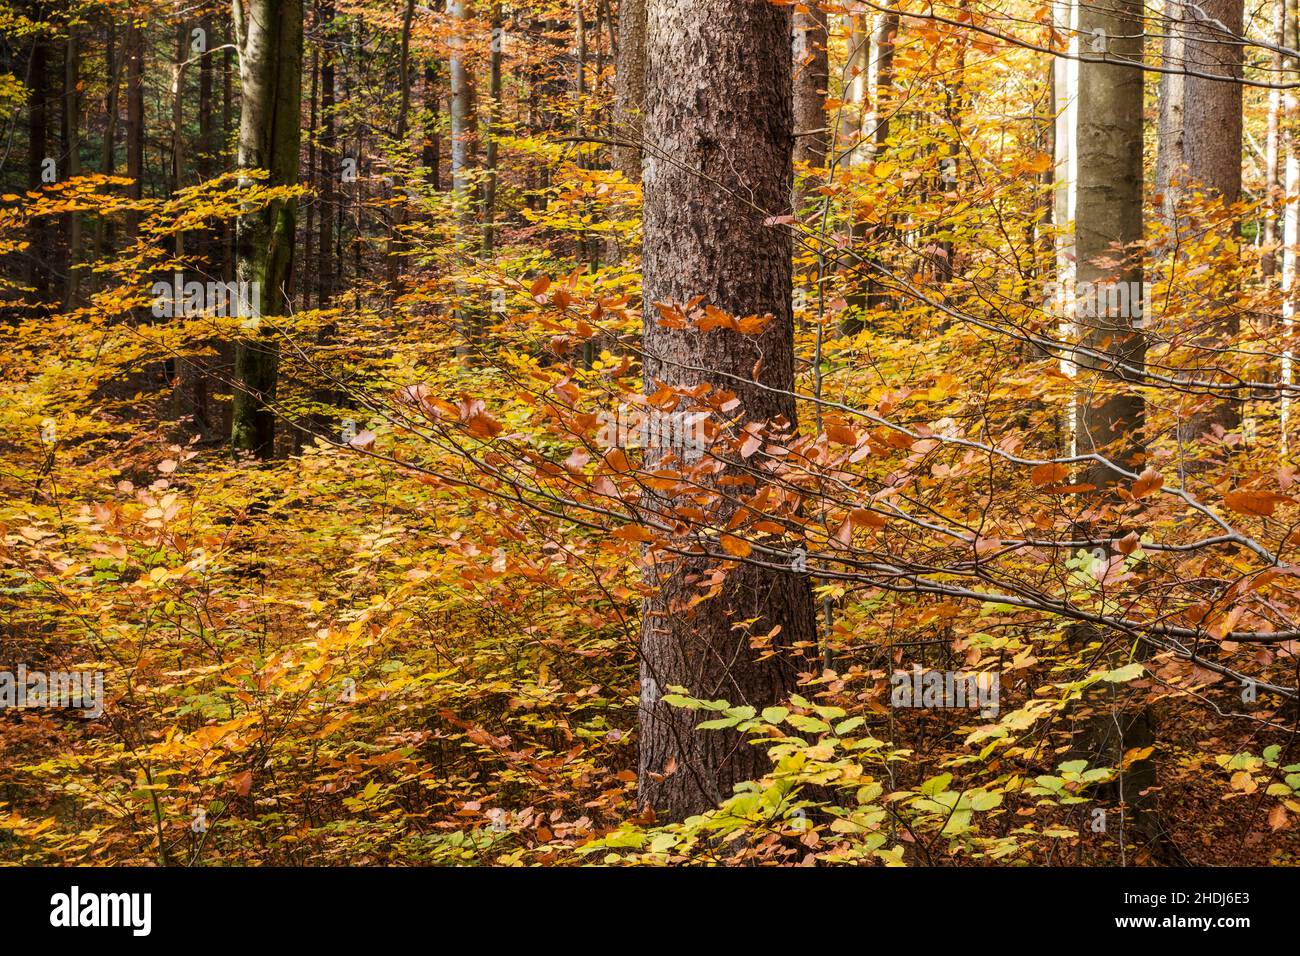 automne, forêt à feuilles caduques, automne, forêts à feuilles caduques Banque D'Images